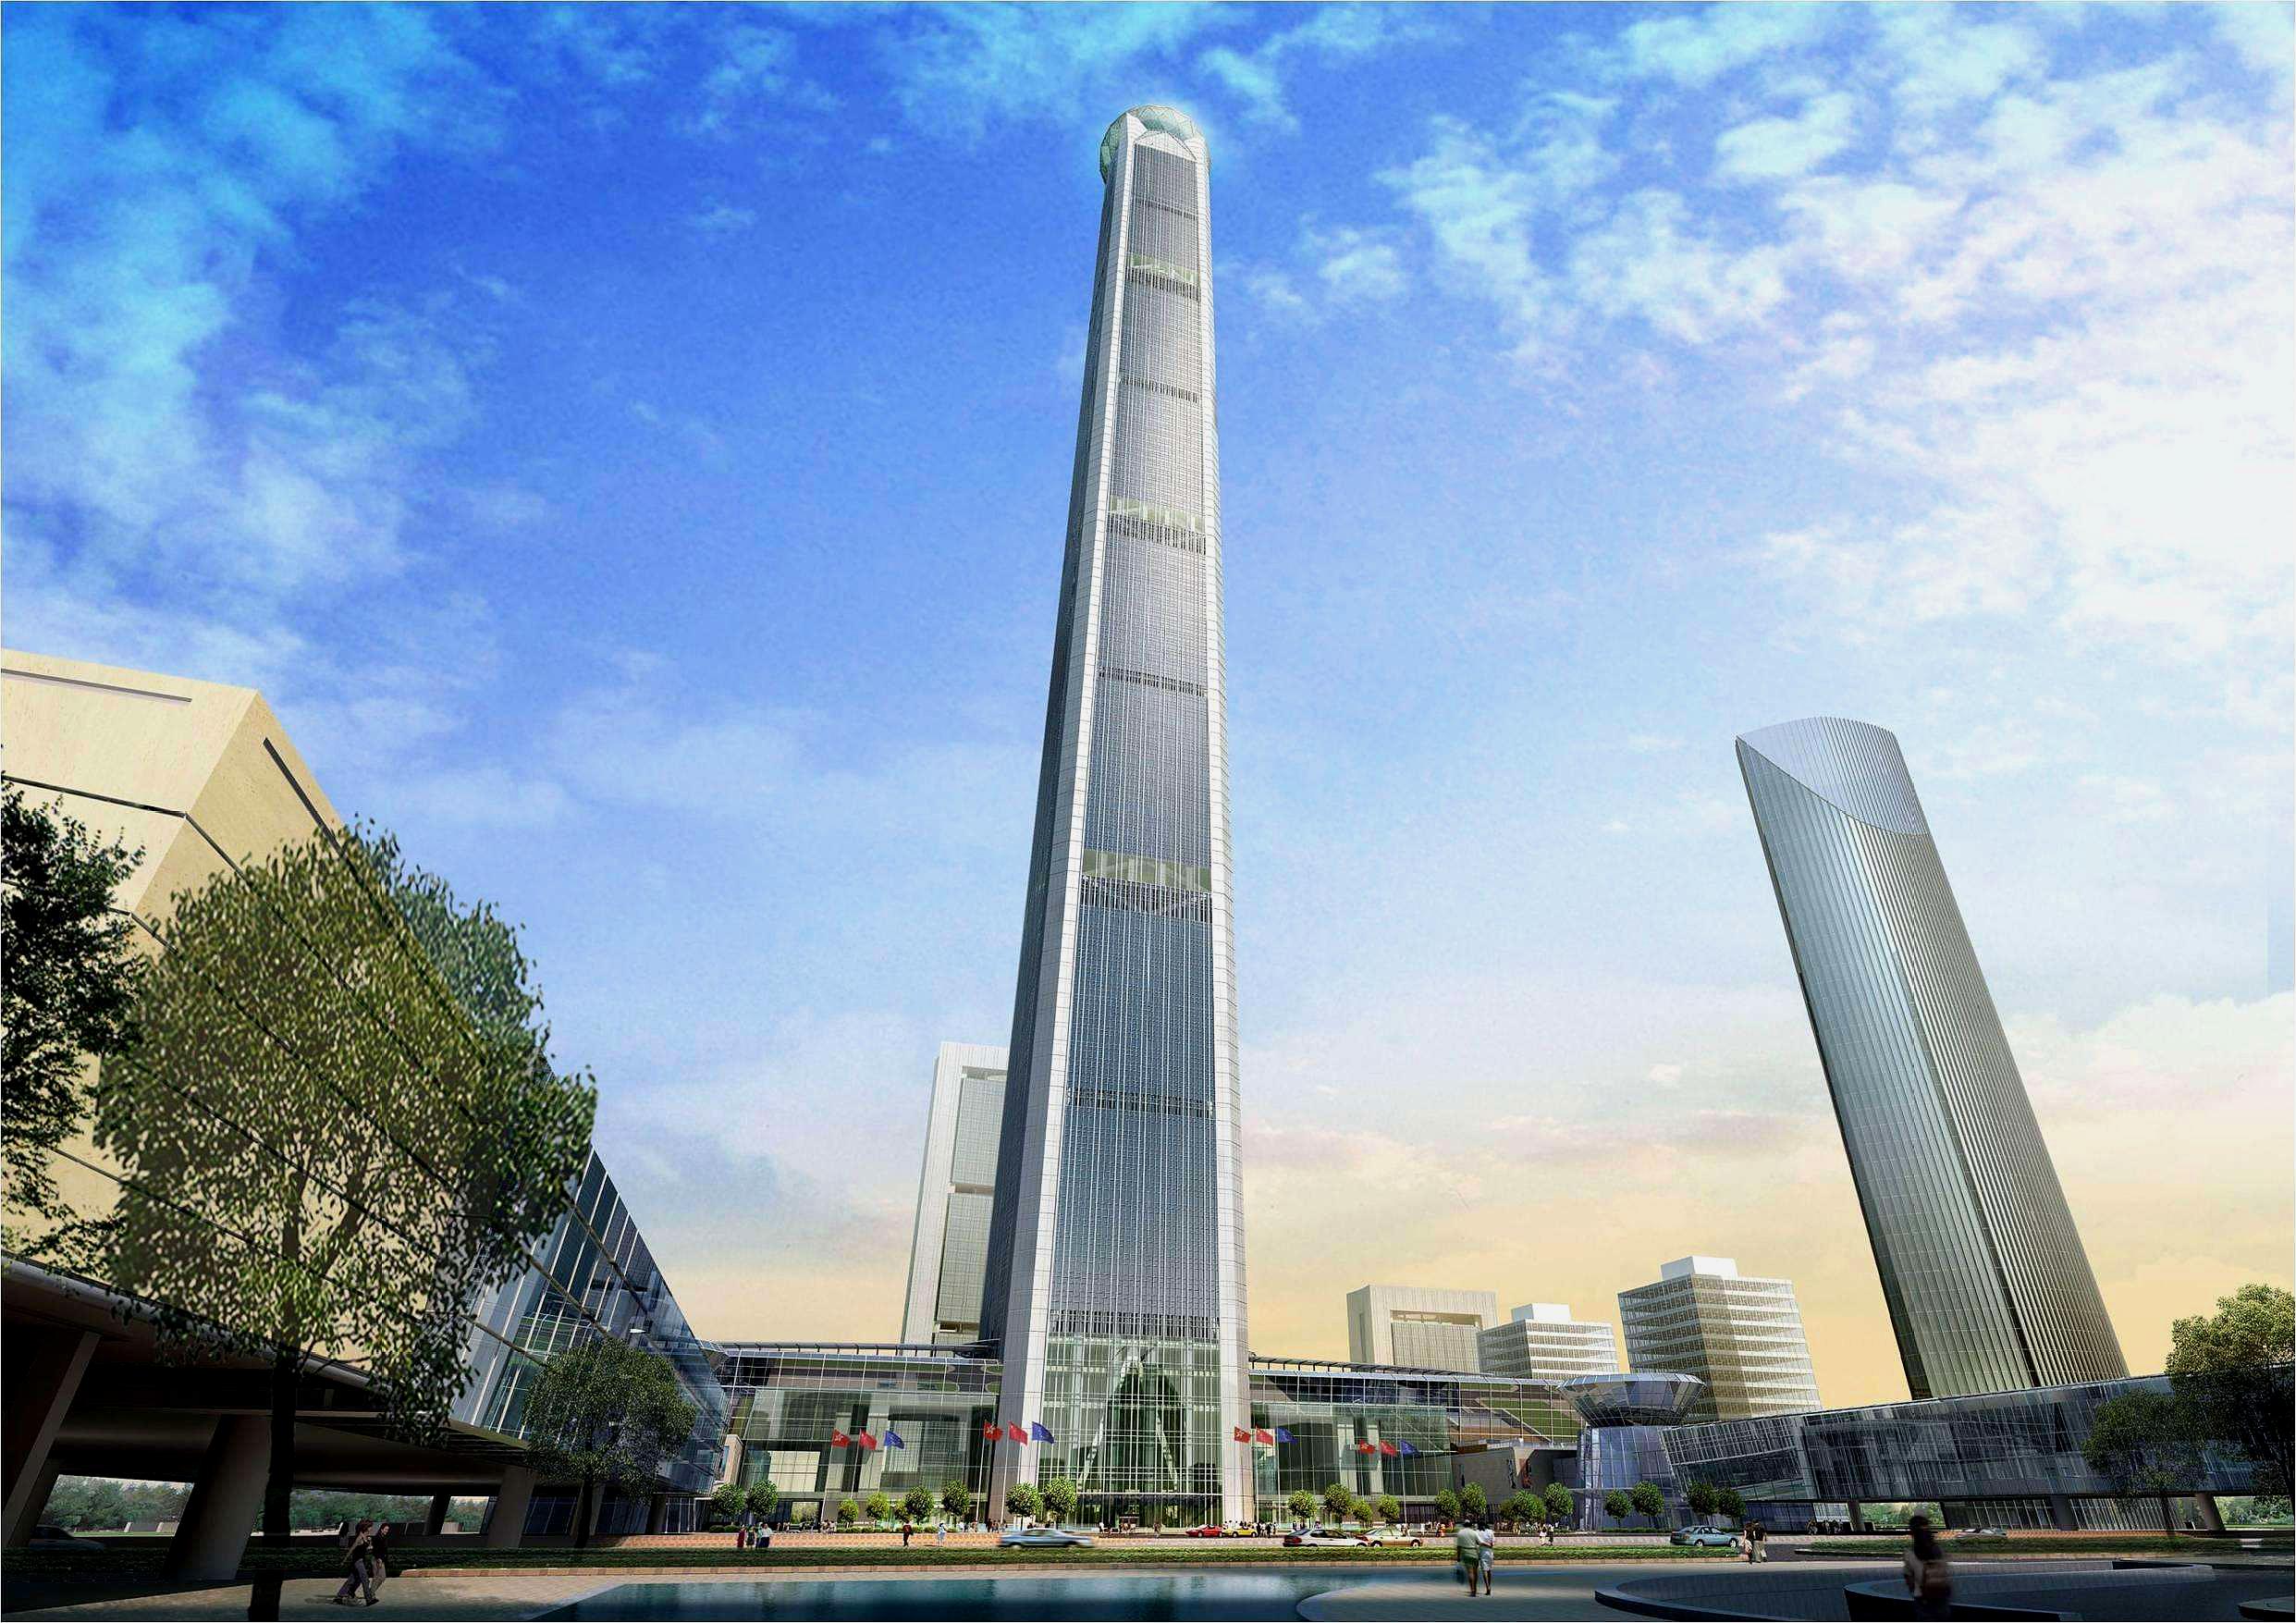 图中所示的建筑为高银金融117大厦,共有117层,建筑总高度为597米,在